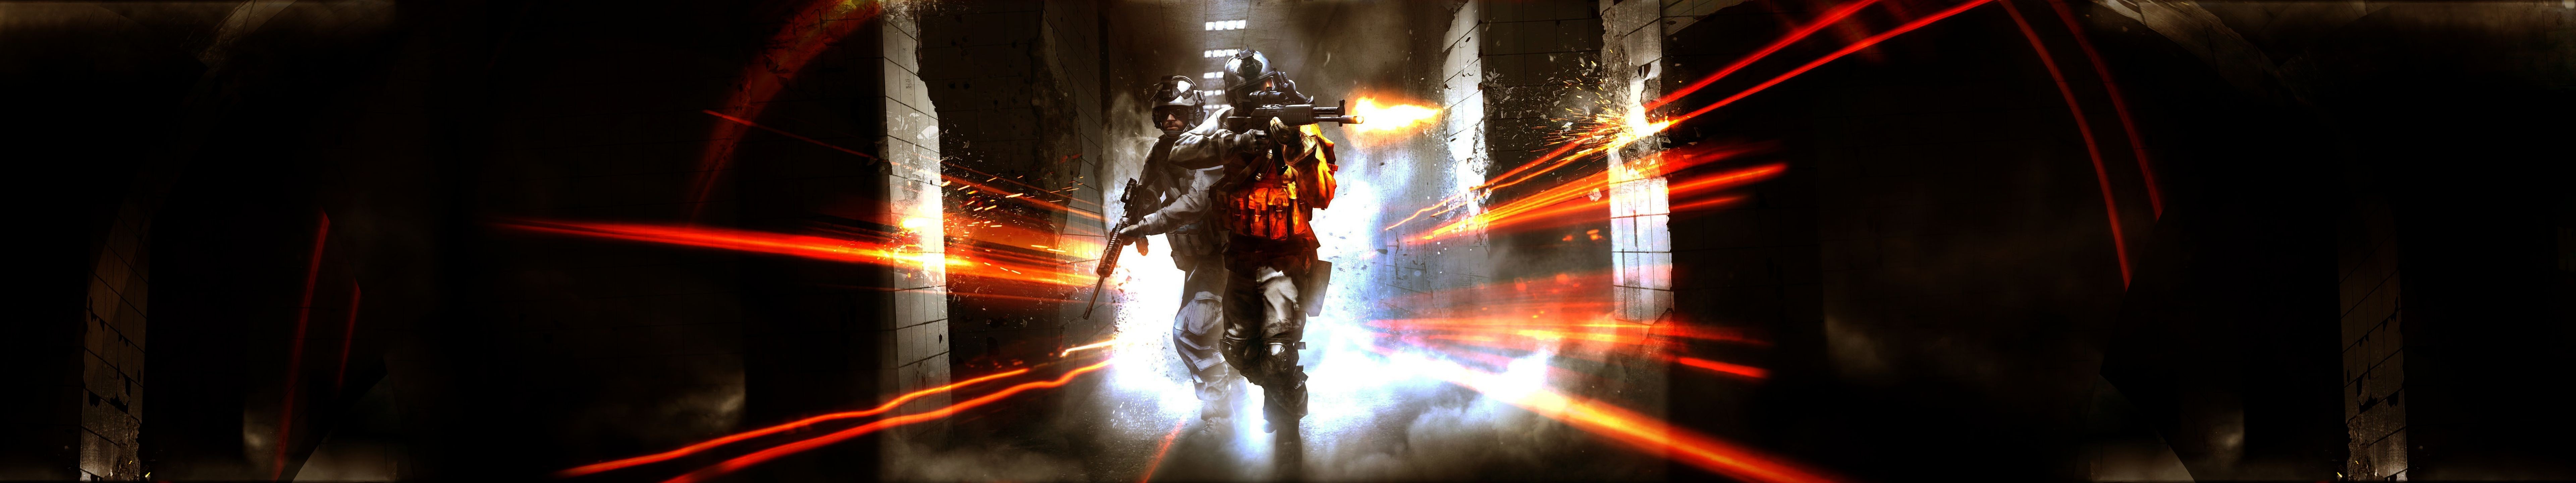 Battlefield 4 Wallpapers HD